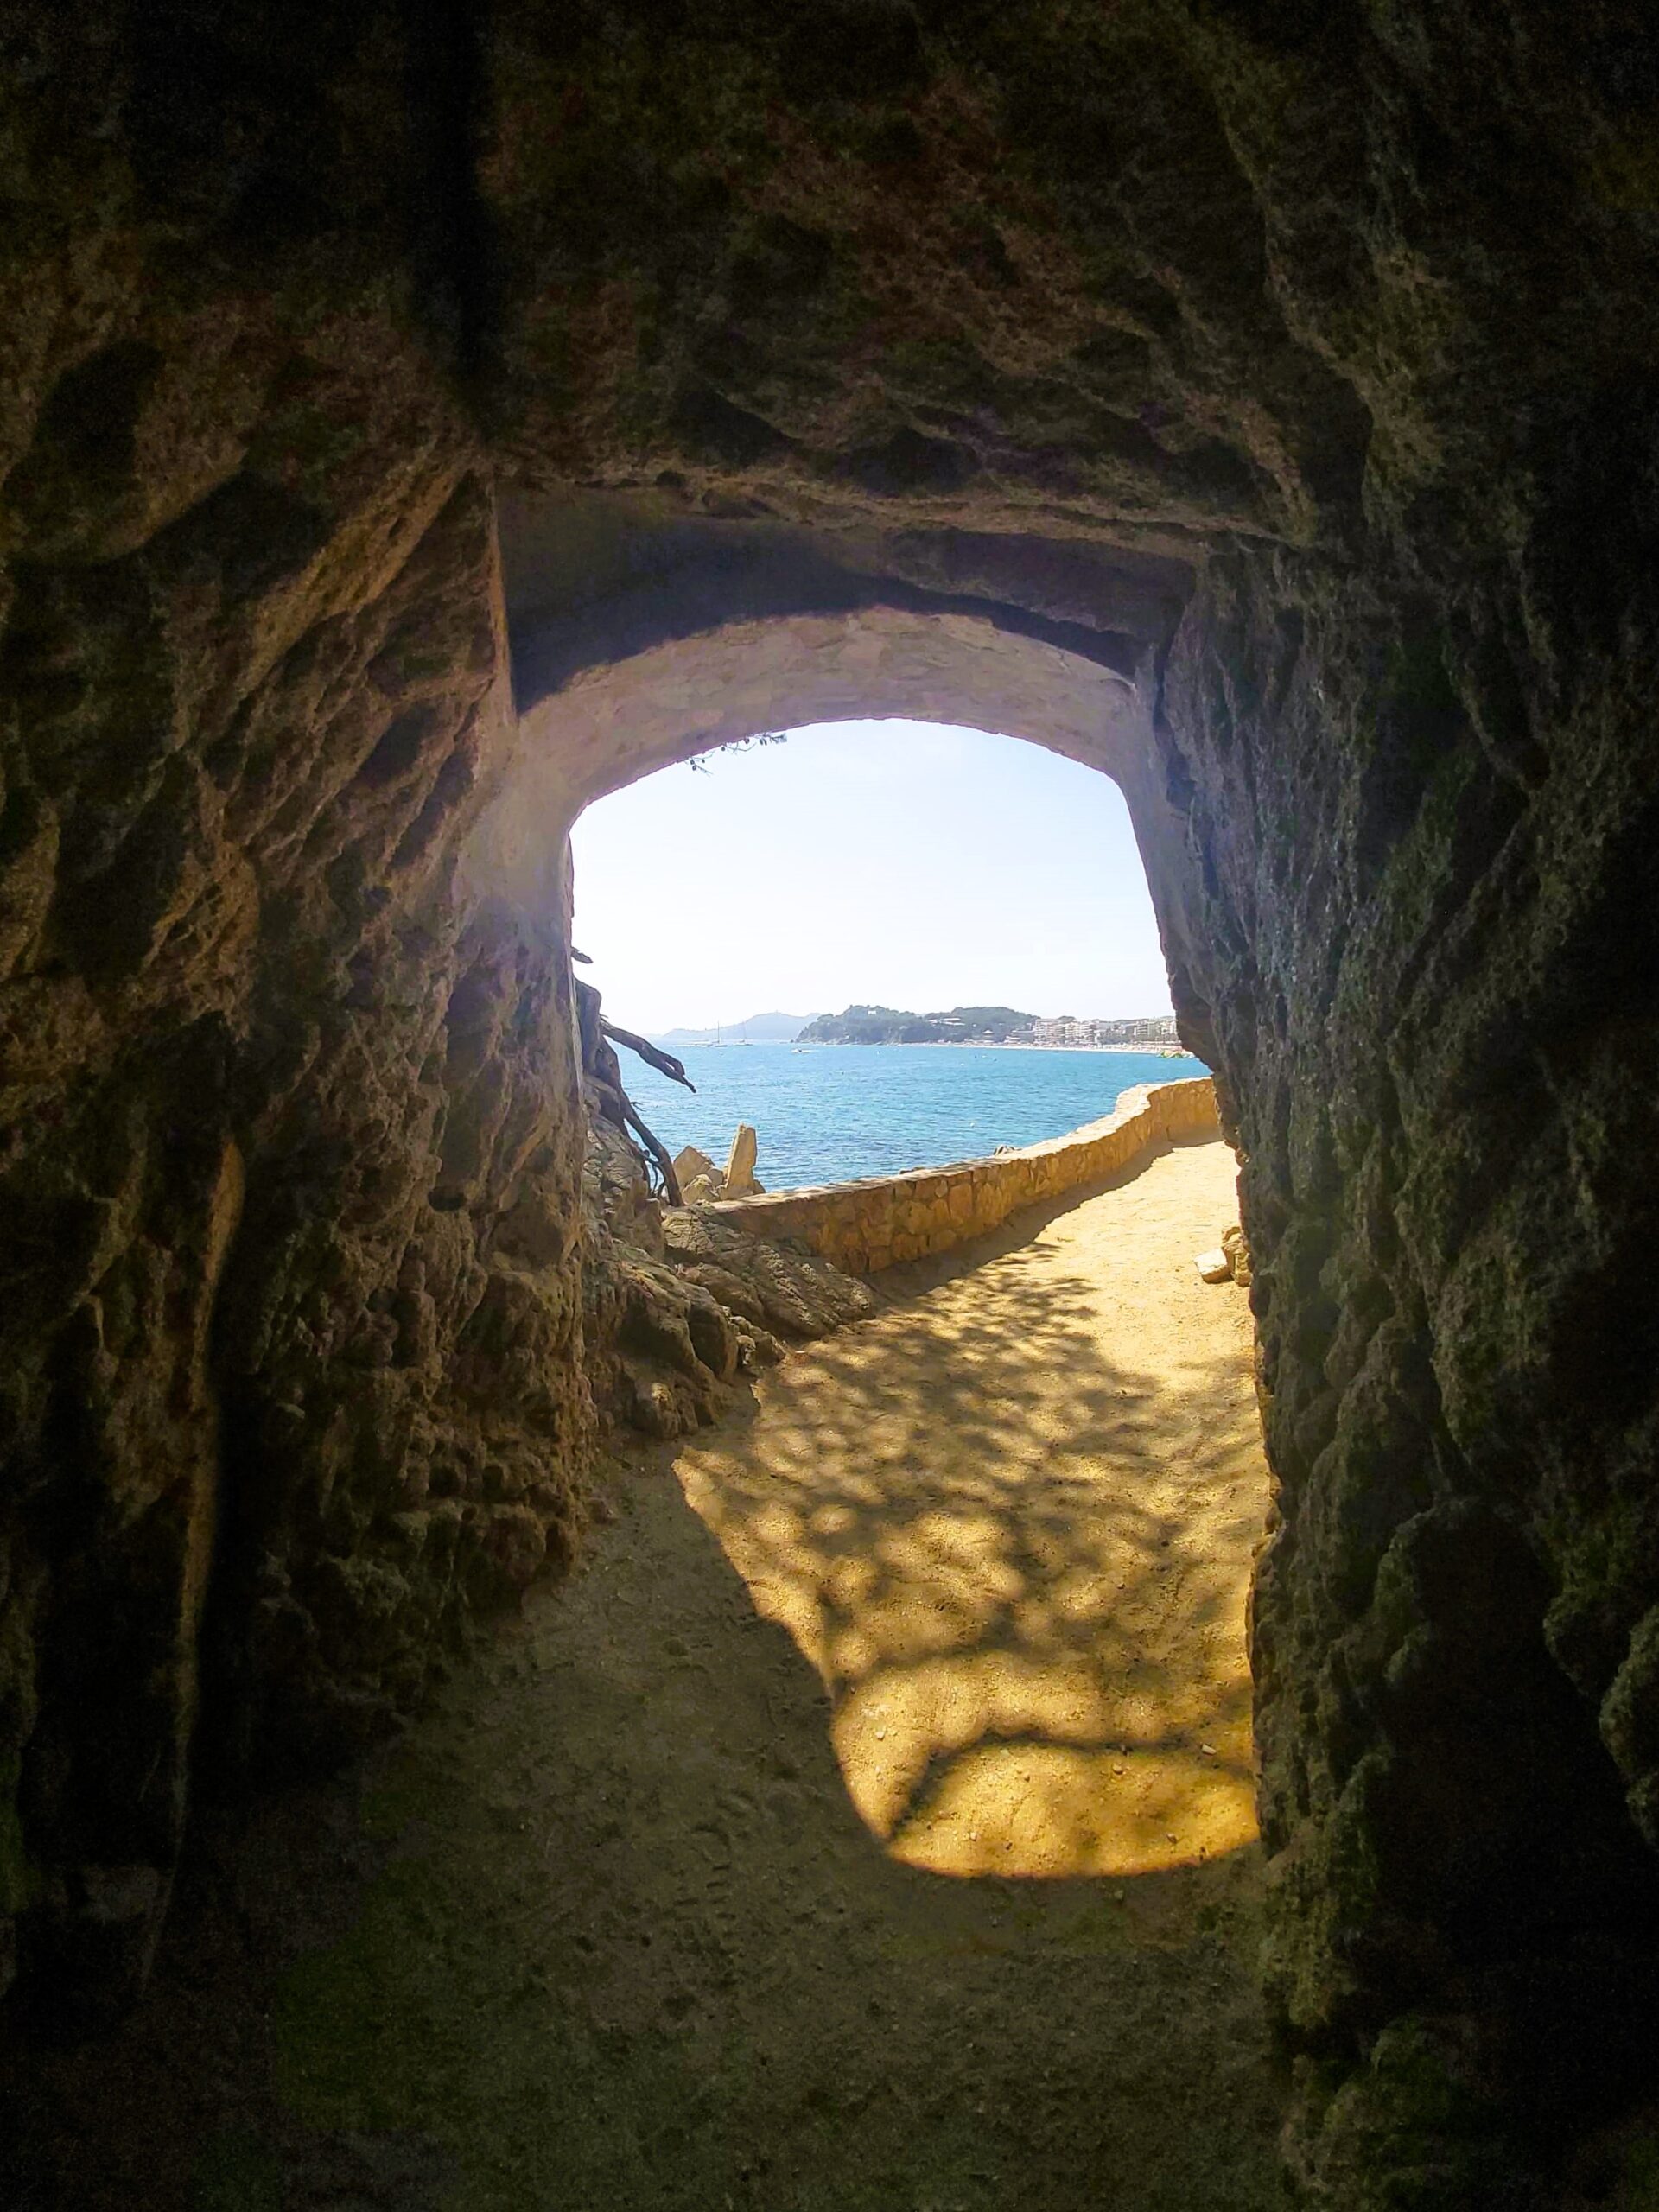 Sea view through a tunnel in Lloret de Mar, Spain